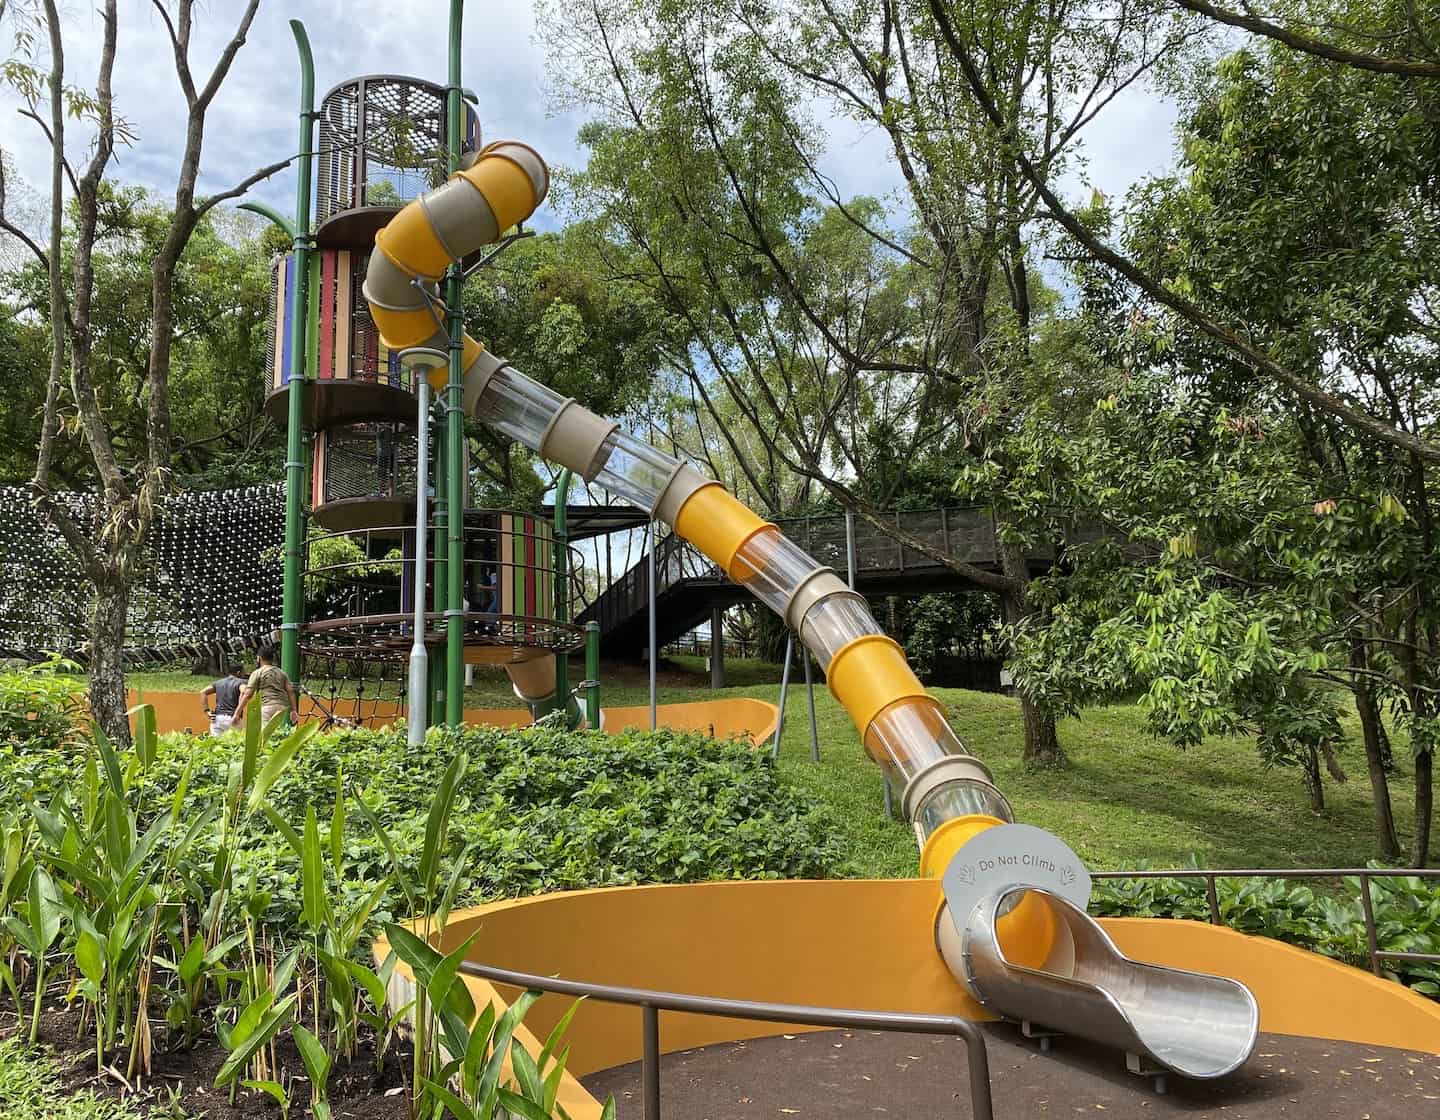 Outdoor Playground Singapore Bukit Batok Neighbourhood Park playground with slides